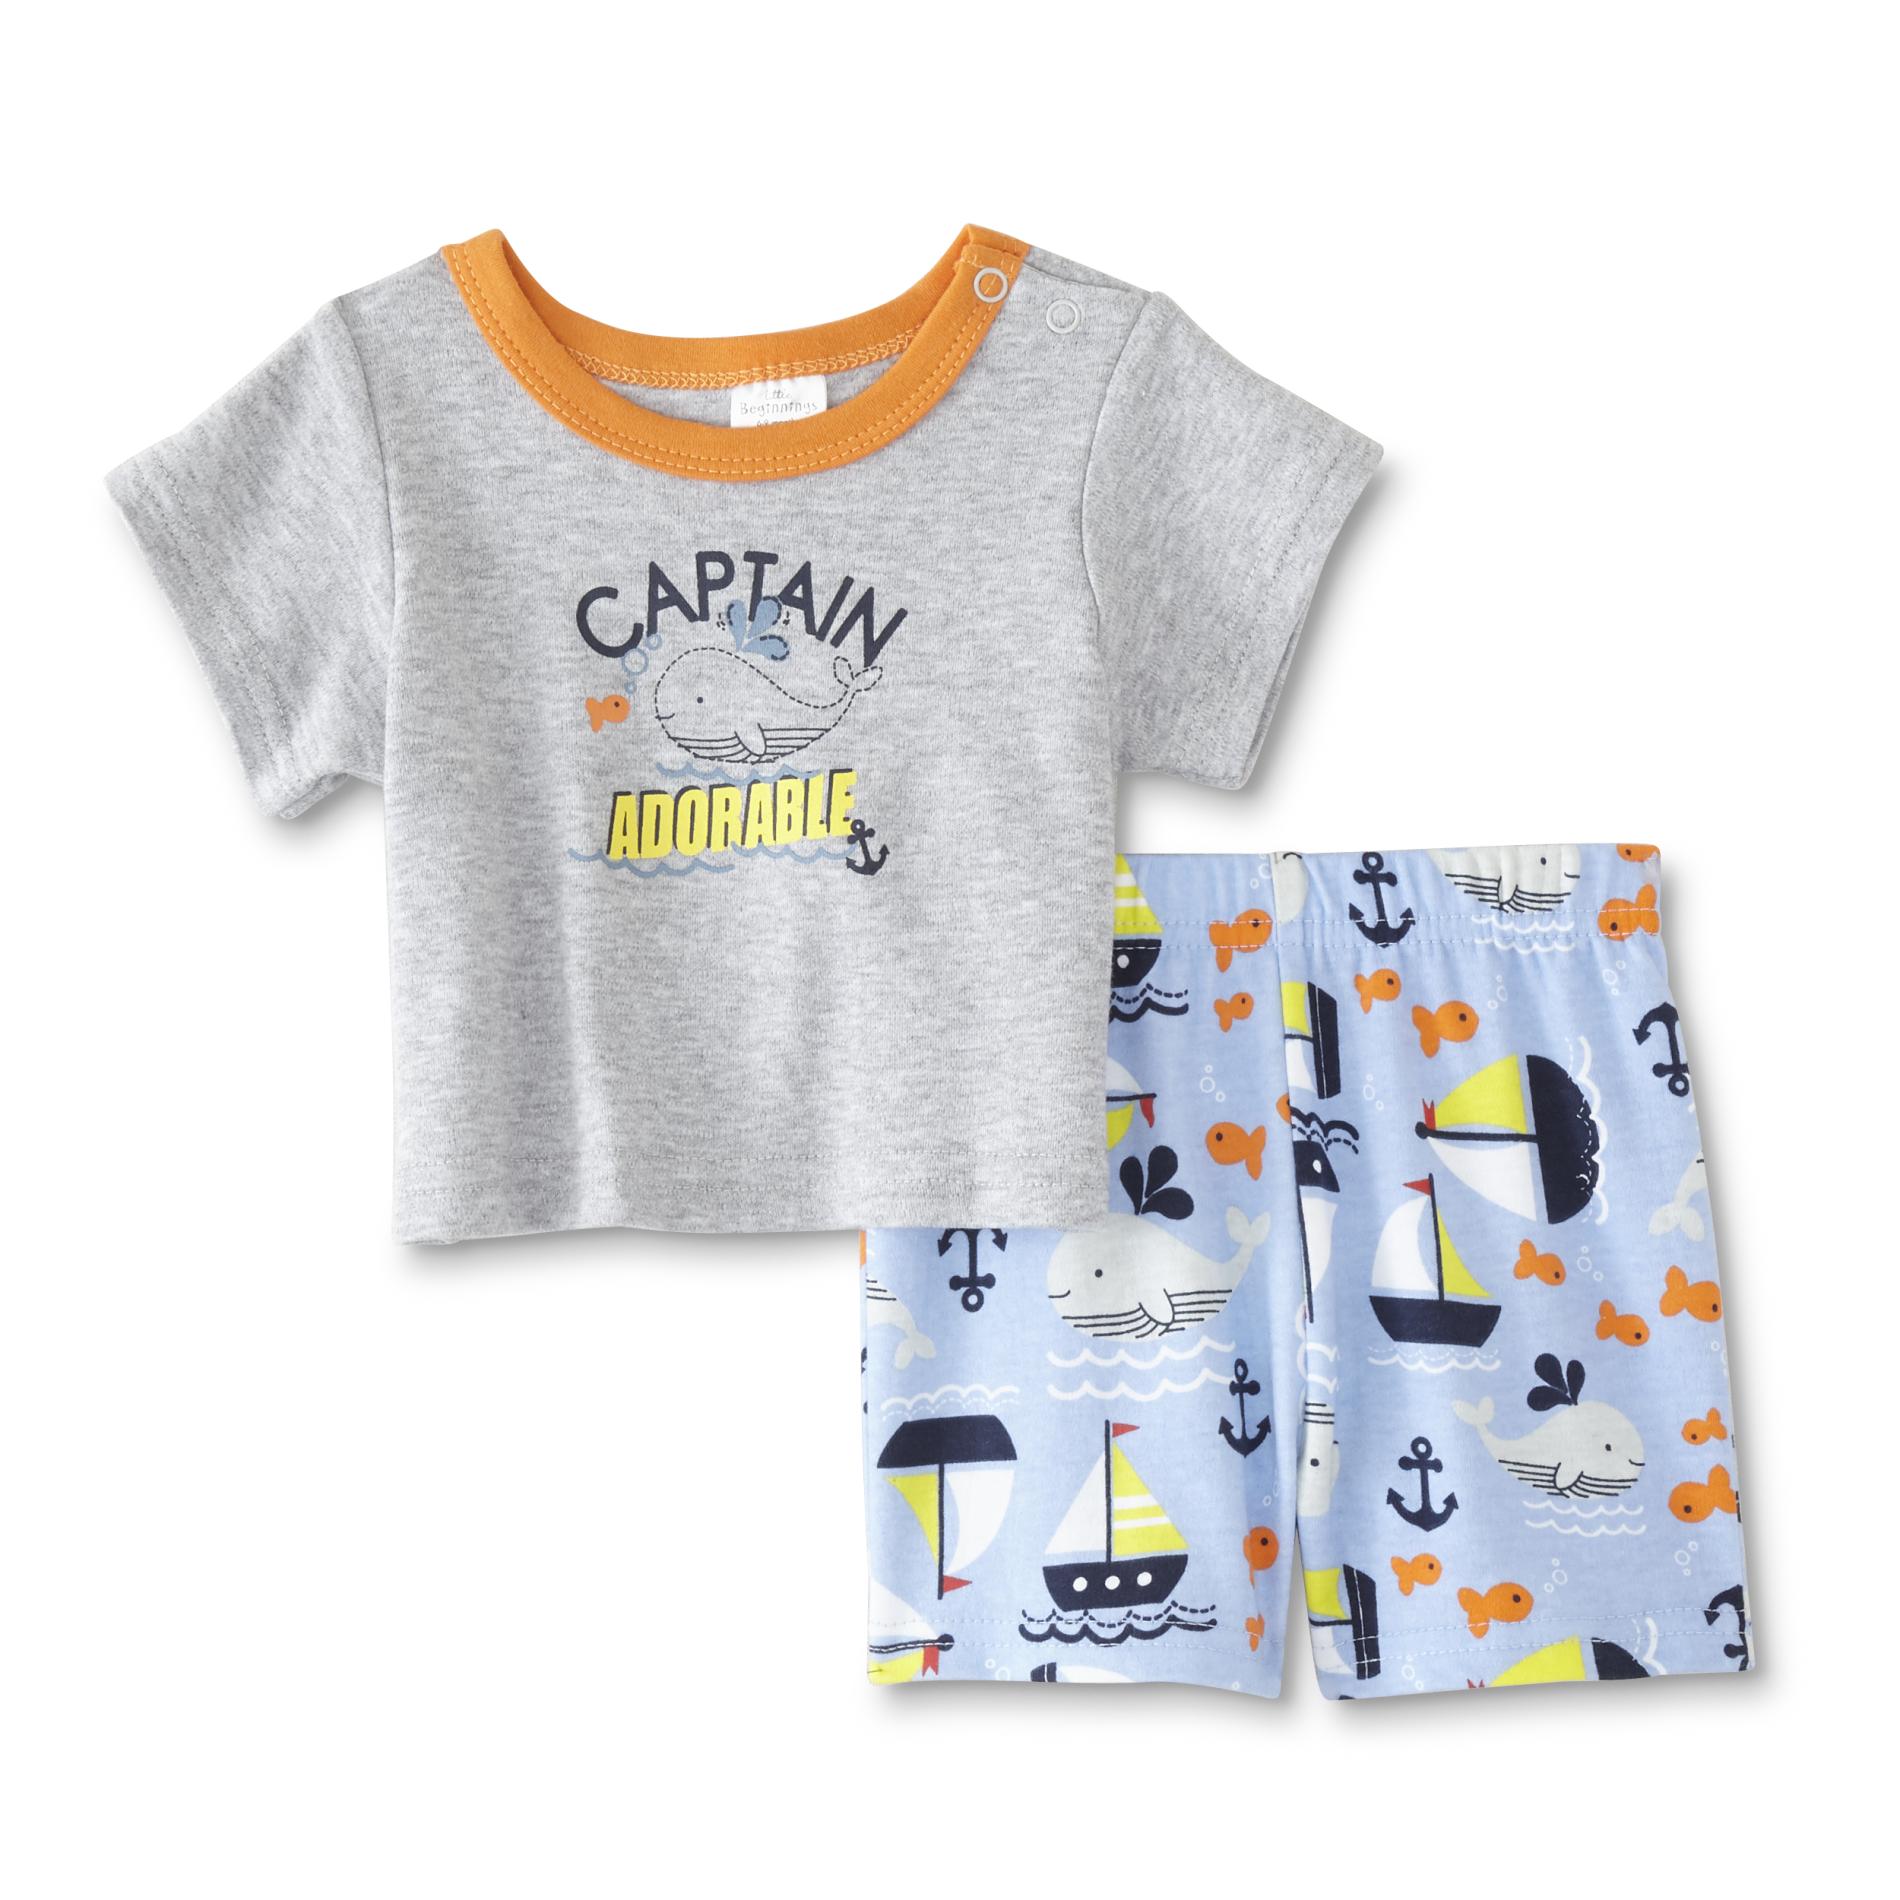 Cudlie Infant Boys' T-Shirt & Shorts - Captain Adorable